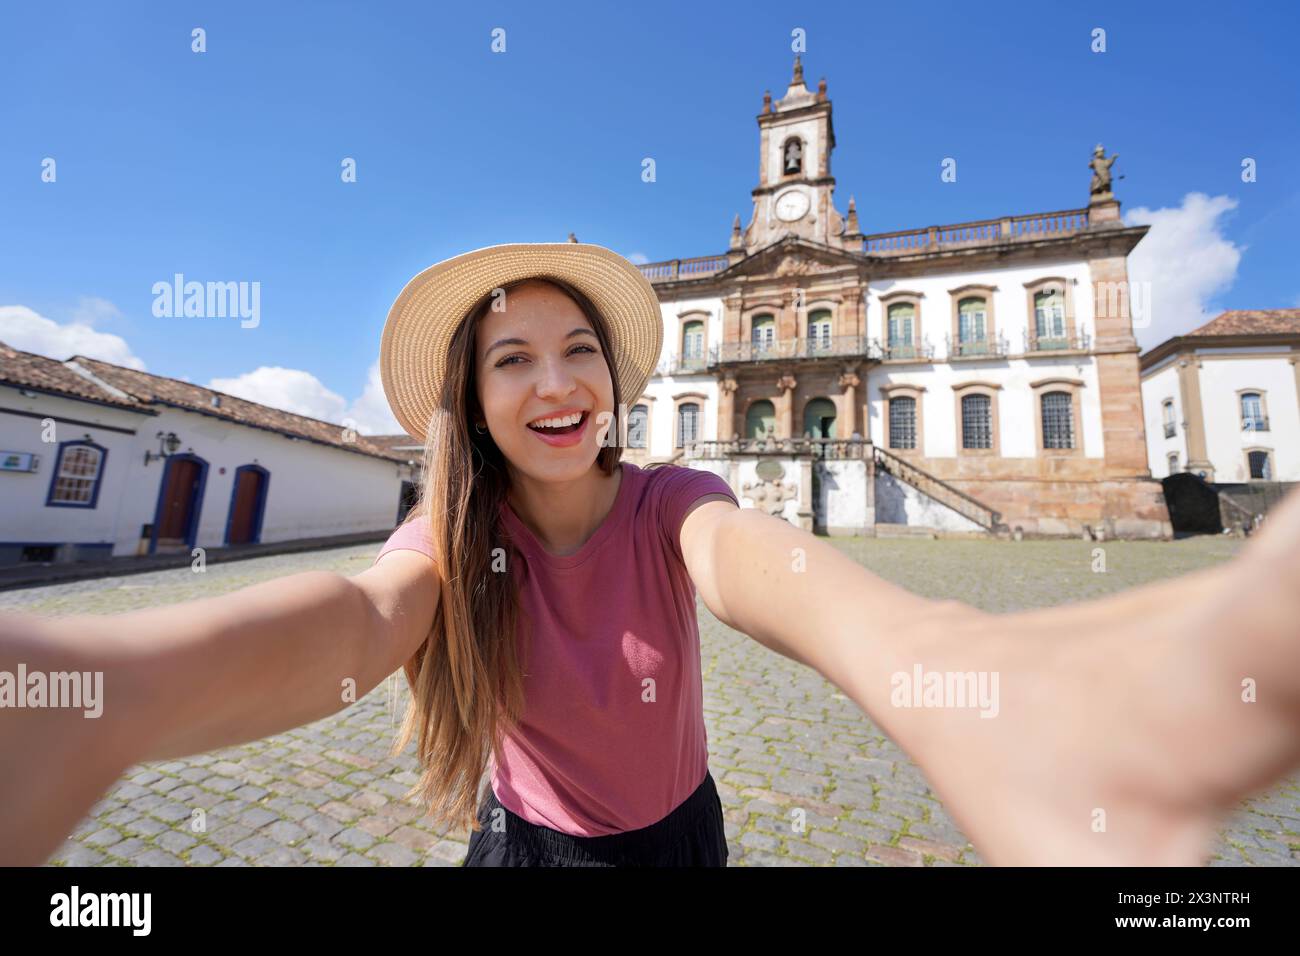 Selfie Girl à Ouro Preto, Brésil. Jeune femme touristique prenant l'autoportrait sur la place Tiradentes célèbre monument d'Ouro Preto, patrimoine mondial de l'UNESCO Banque D'Images